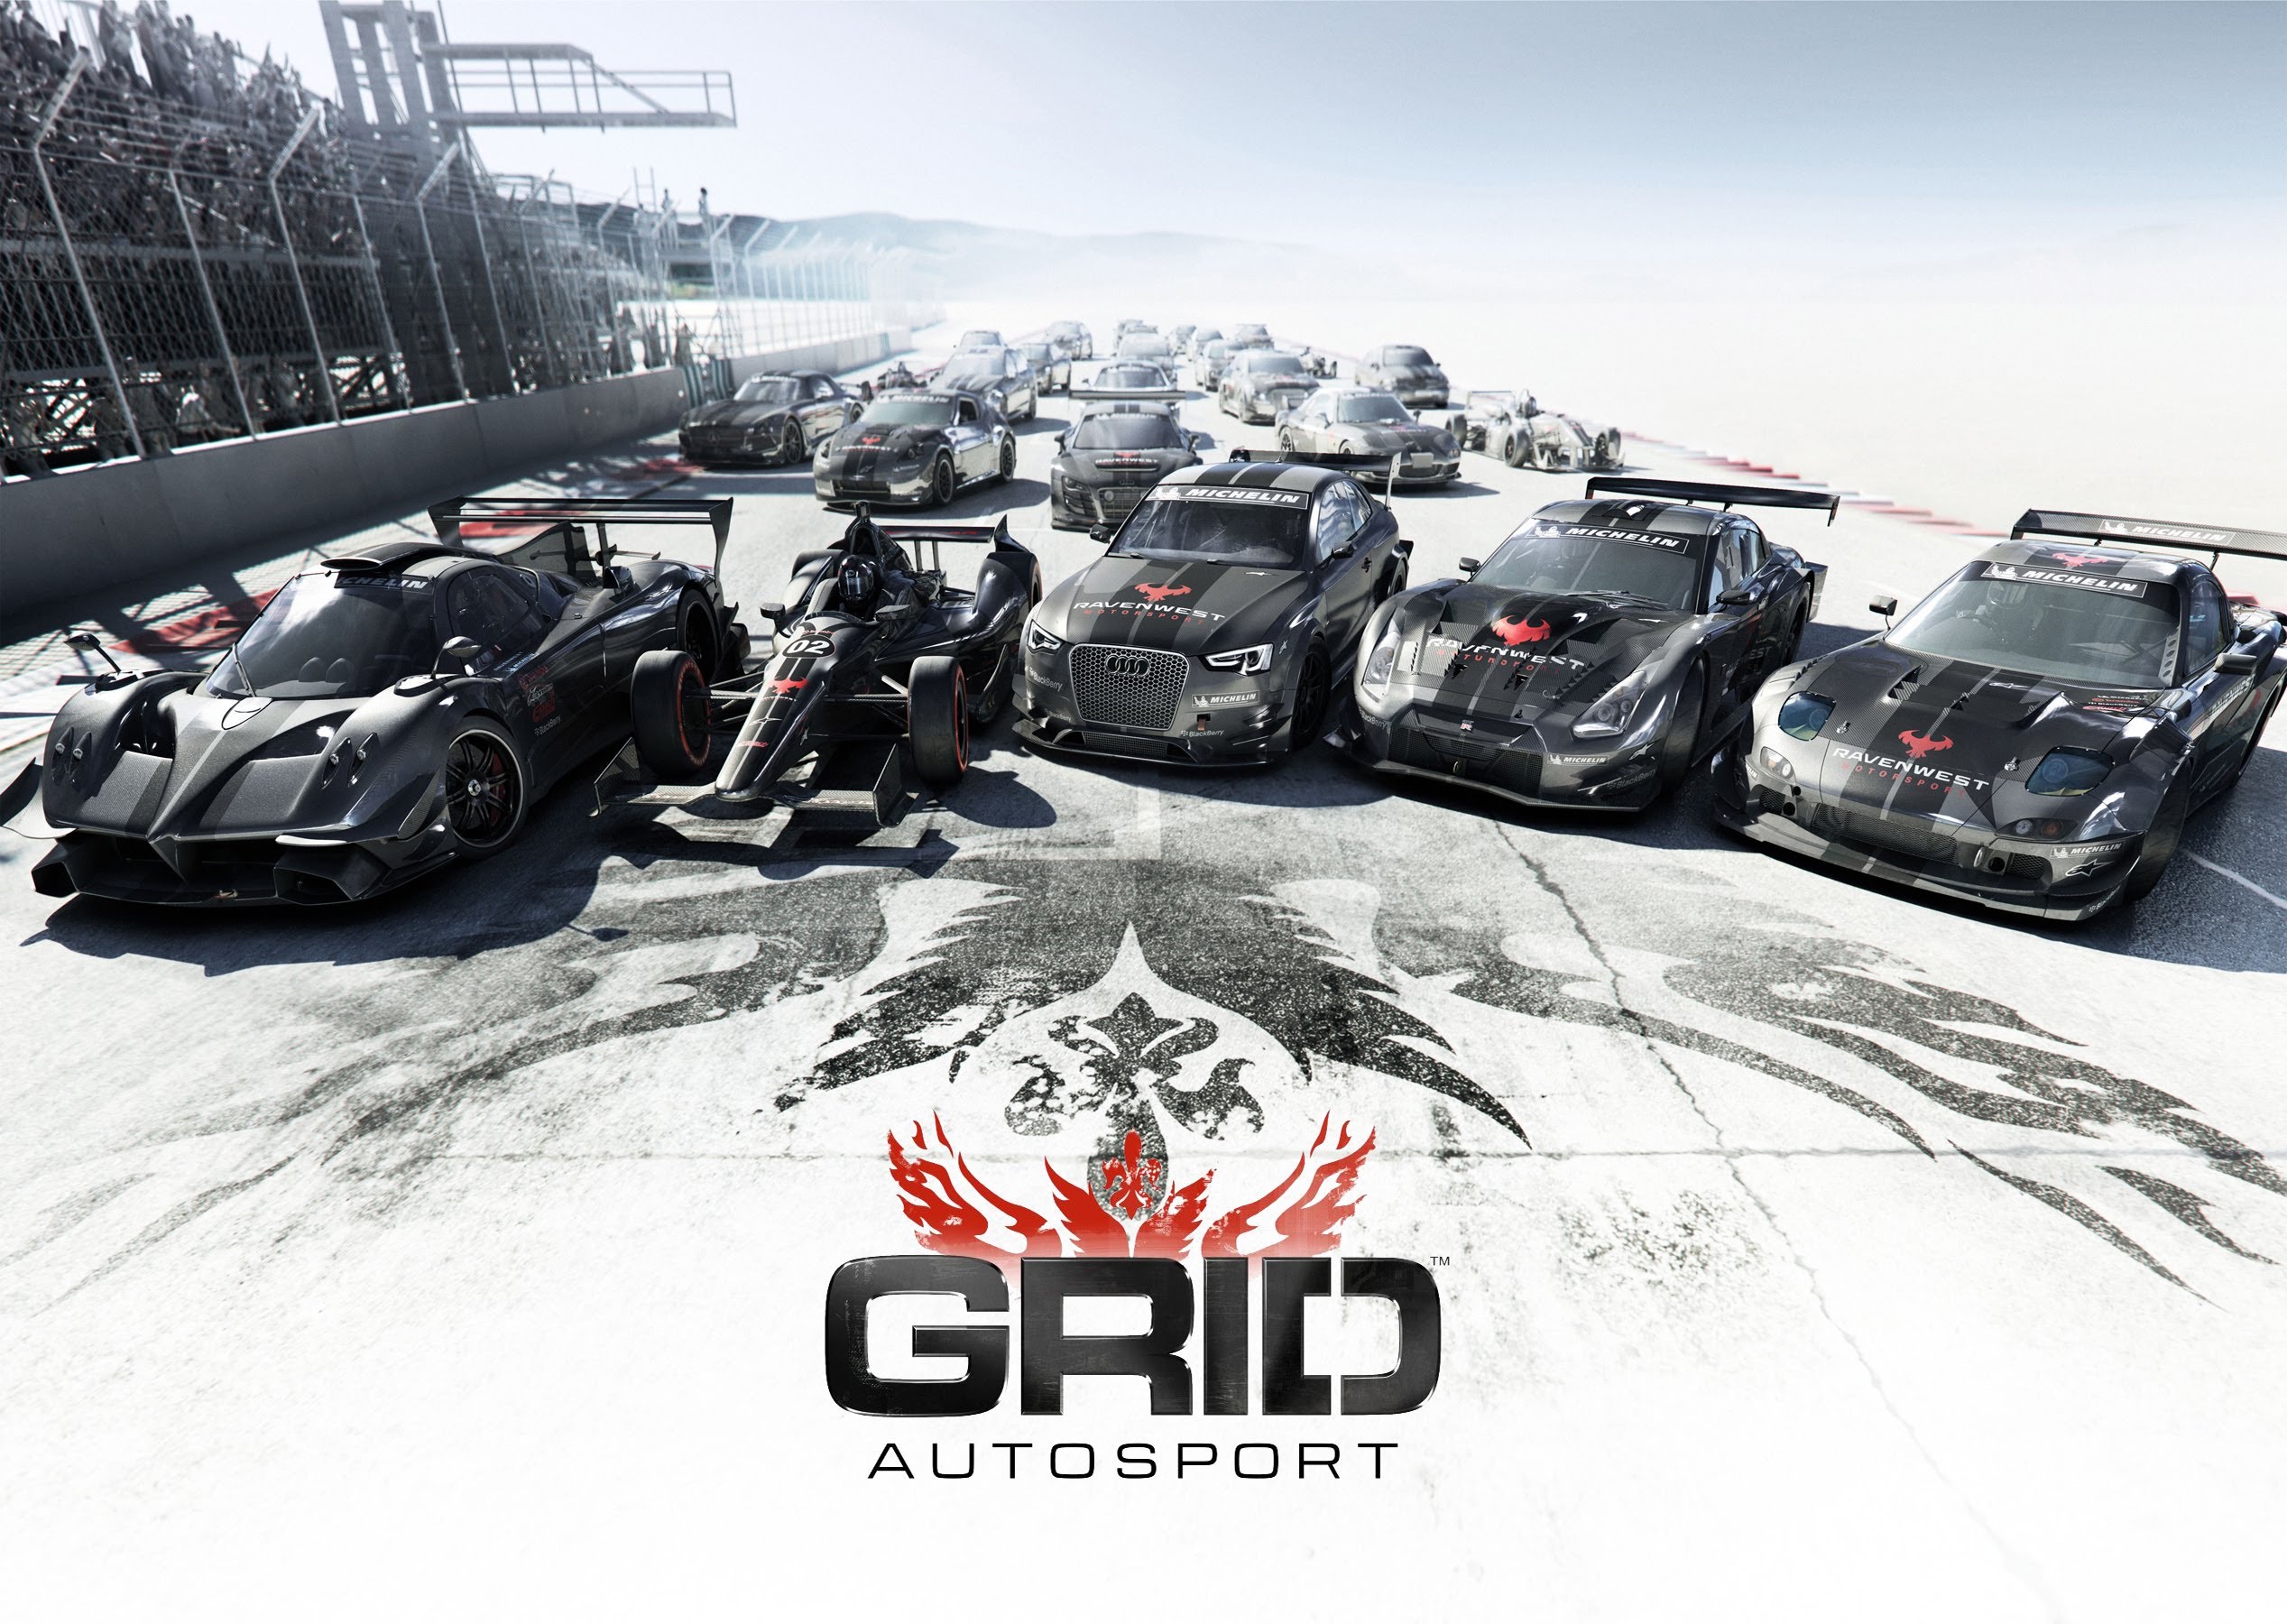 4k grid autosport images